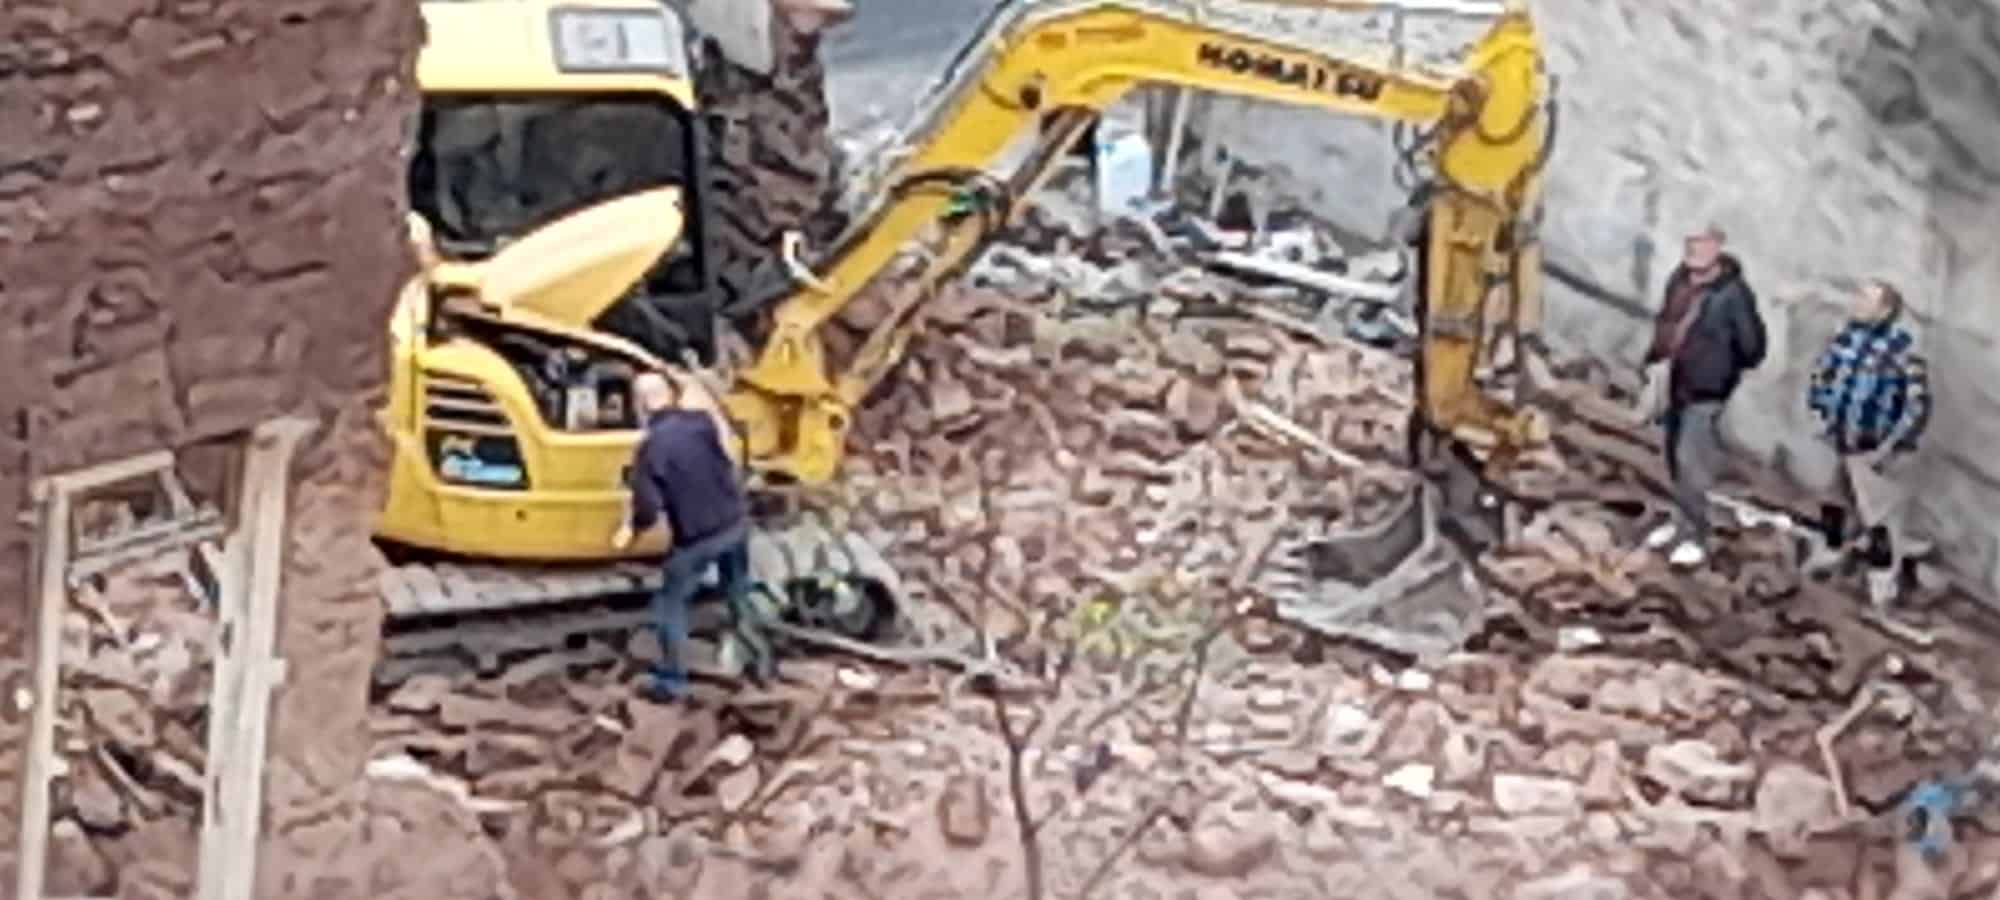 Edificio in stato di abbandono a rischio crollo a Catania, finalmente l’abbattimento – FOTO e VIDEO